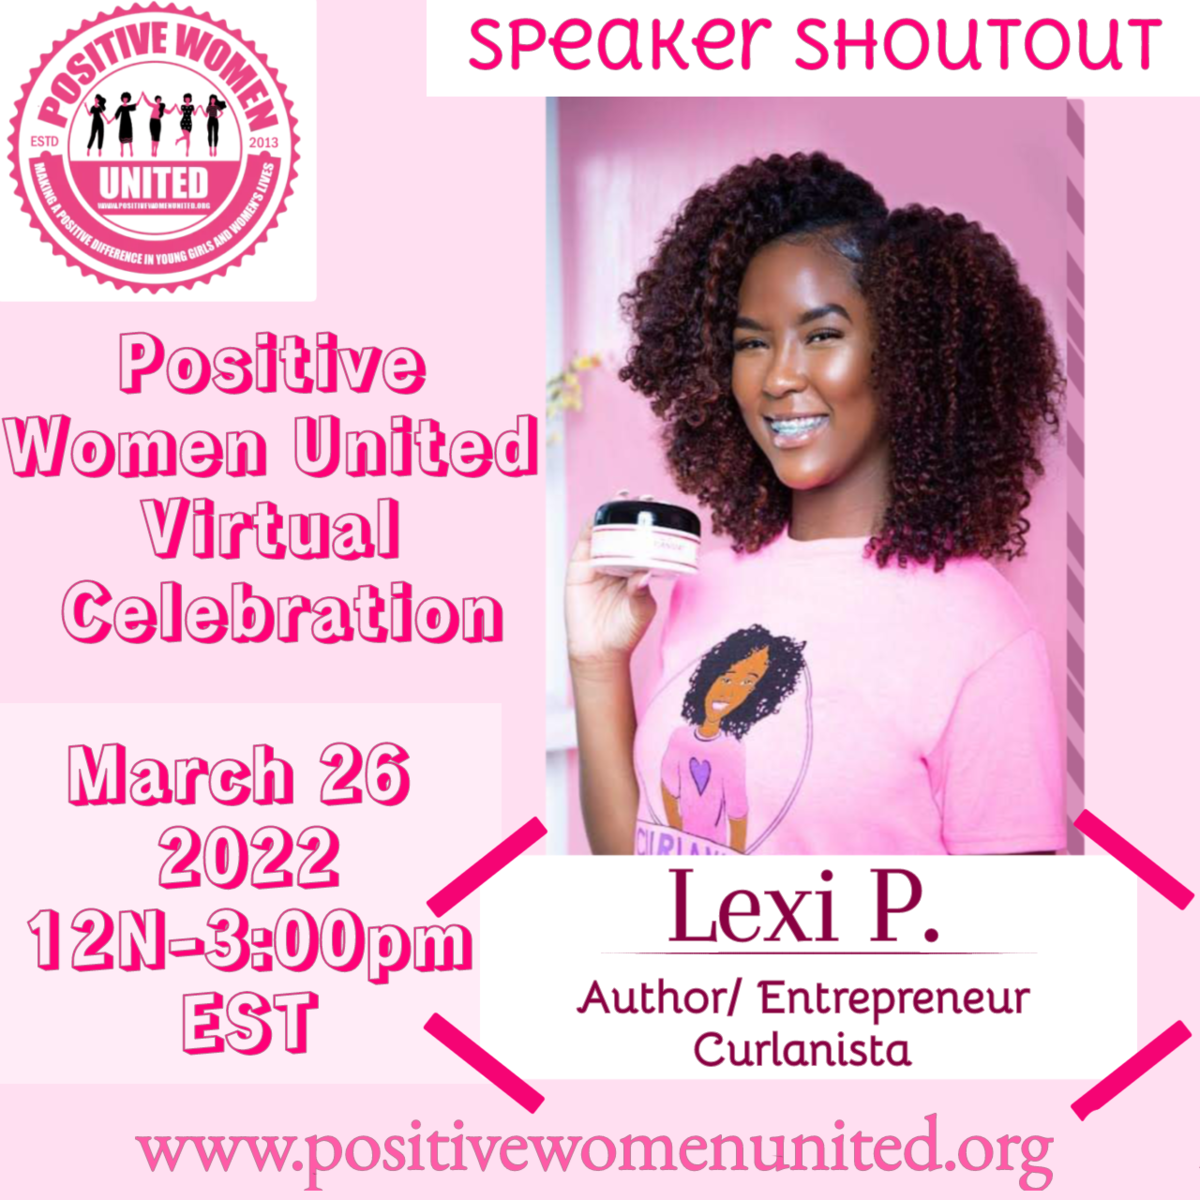 POSITIVE WOMEN UNITED SPEAKER - LEXI P.